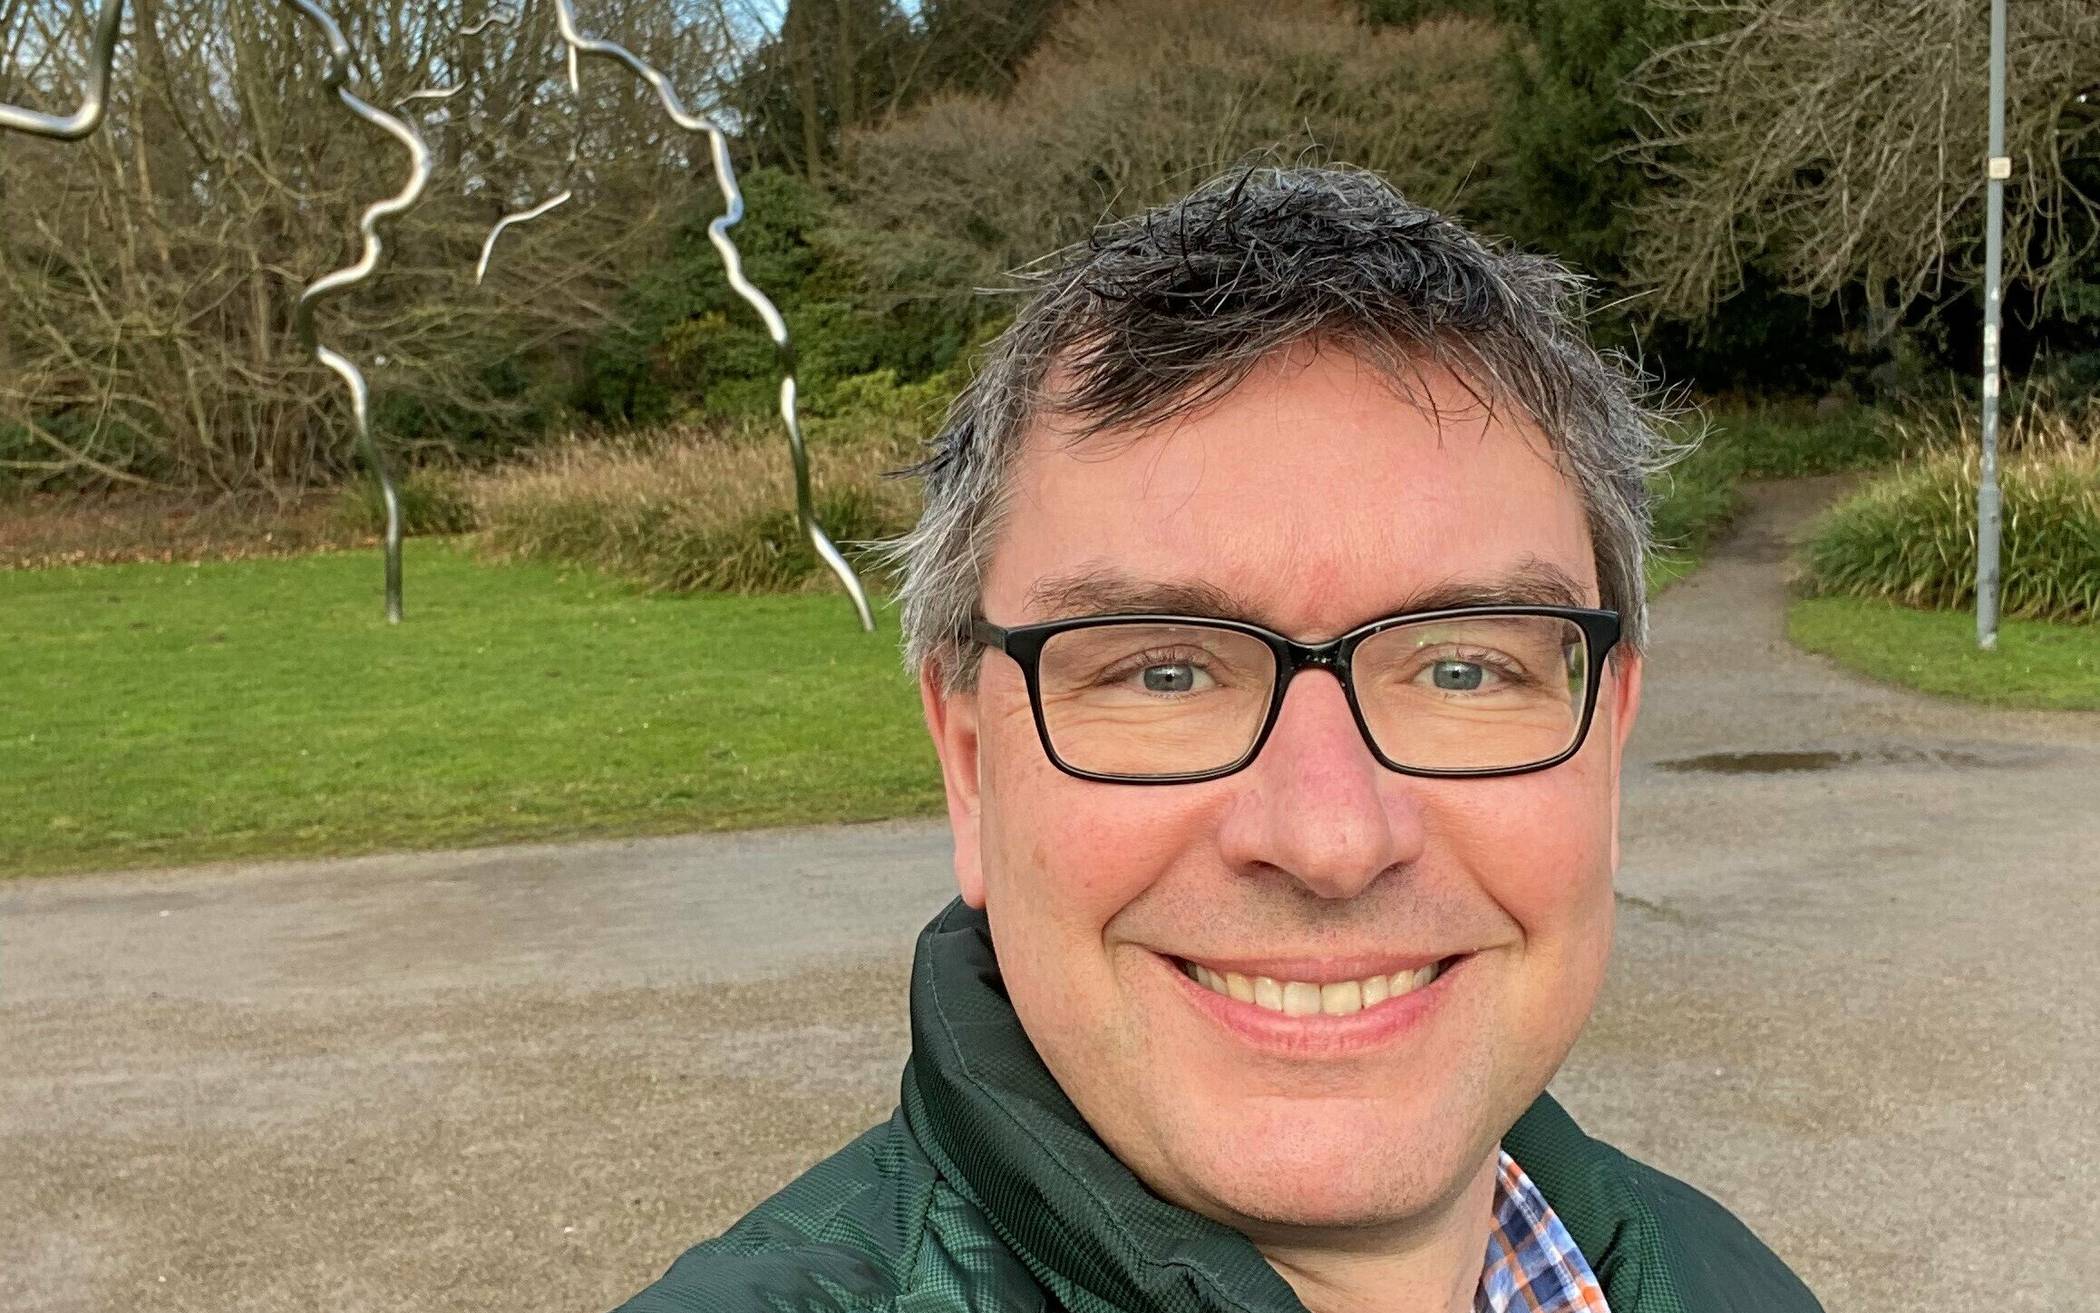  Florian Herpel, technischer Beigeordneter der Stadt Grevenbroich, in einem Selfie an seinem Lieblingsort. 